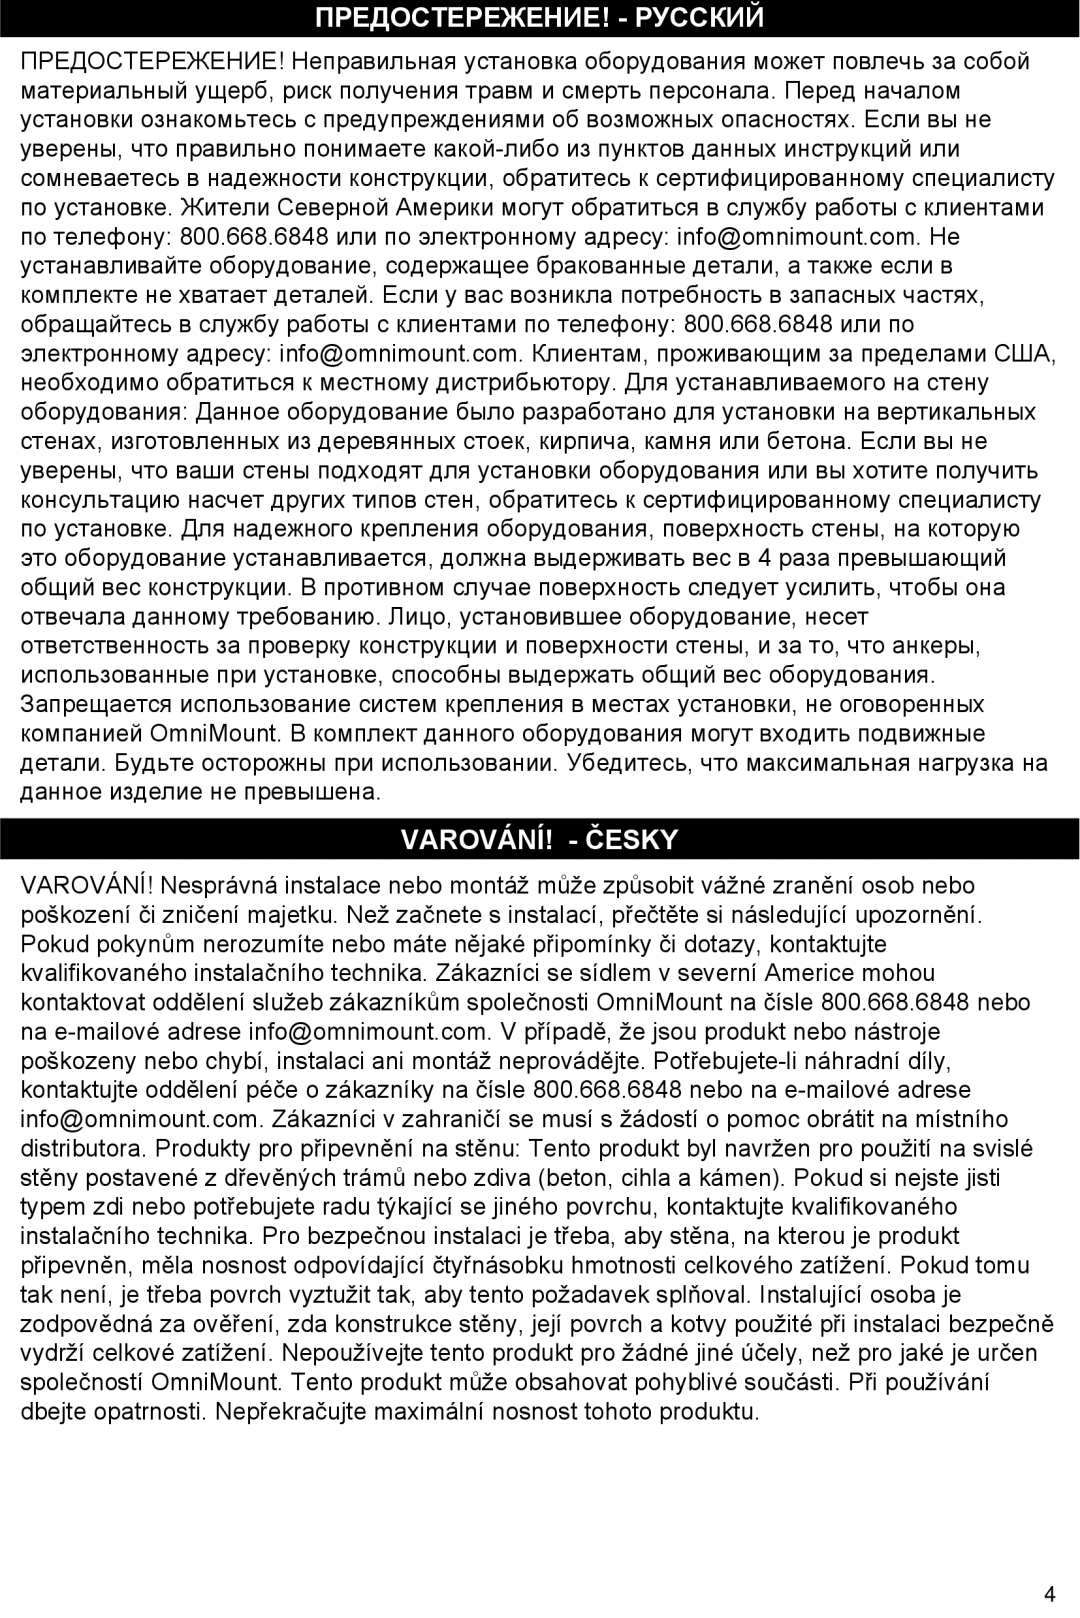 Omnimount Gemini 2 instruction manual Предостережение! - Русский, Varování! - Česky 